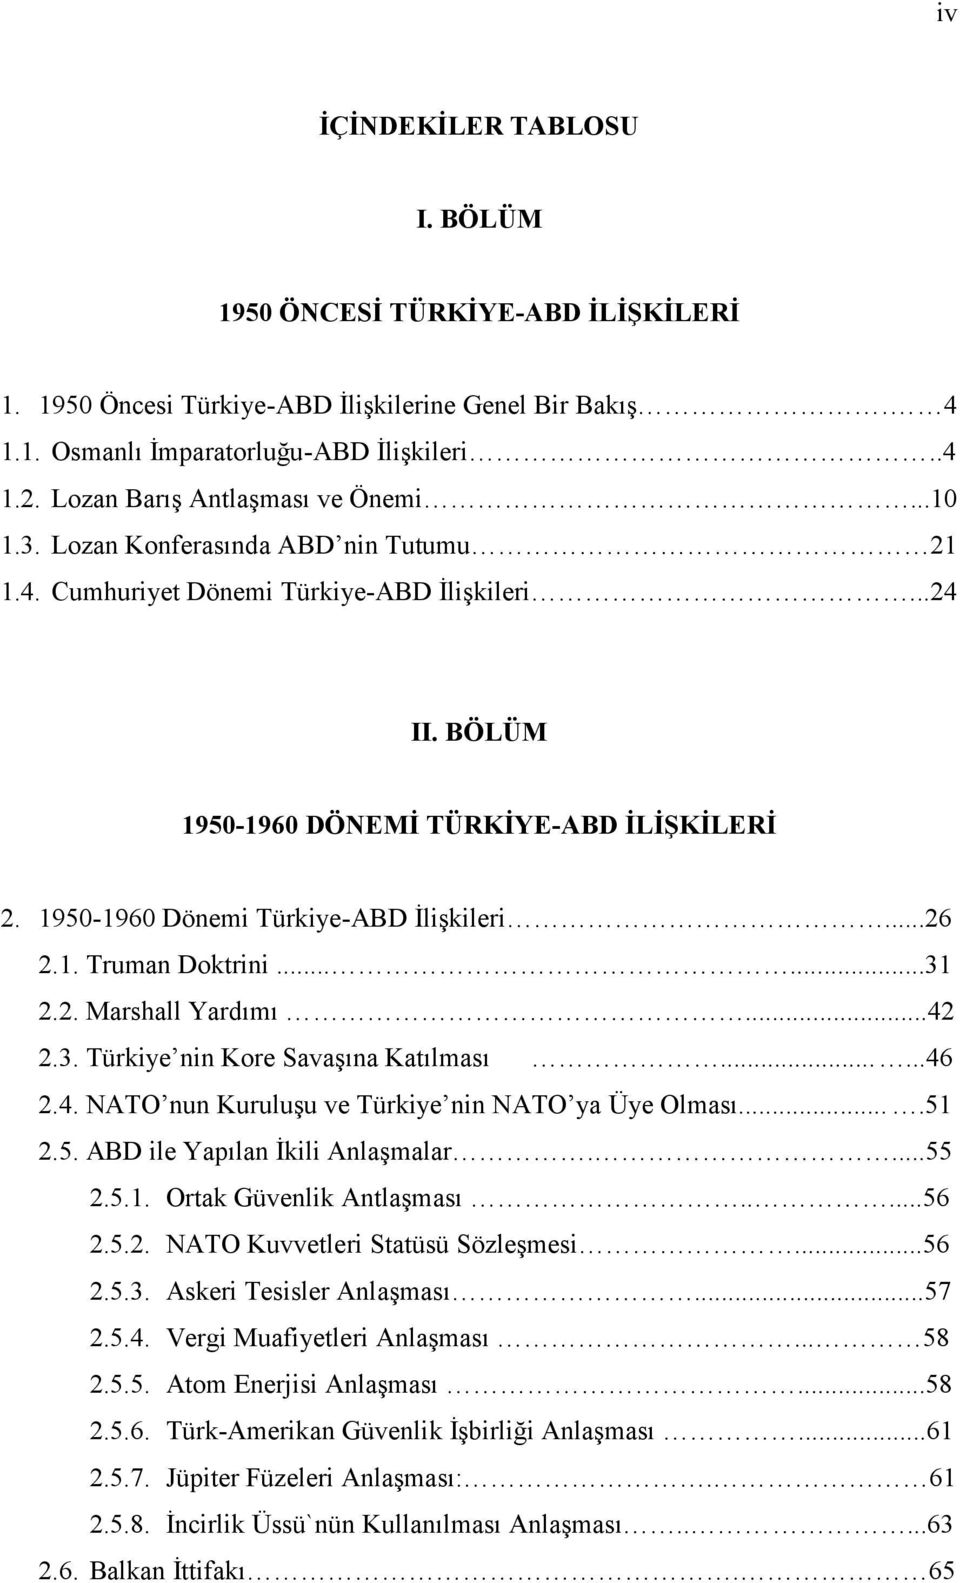 1950-1960 Dönemi Türkiye-ABD İlişkileri...26 2.1. Truman Doktrini......31 2.2. Marshall Yardımı...42 2.3. Türkiye nin Kore Savaşına Katılması......46 2.4. NATO nun Kuruluşu ve Türkiye nin NATO ya Üye Olması.